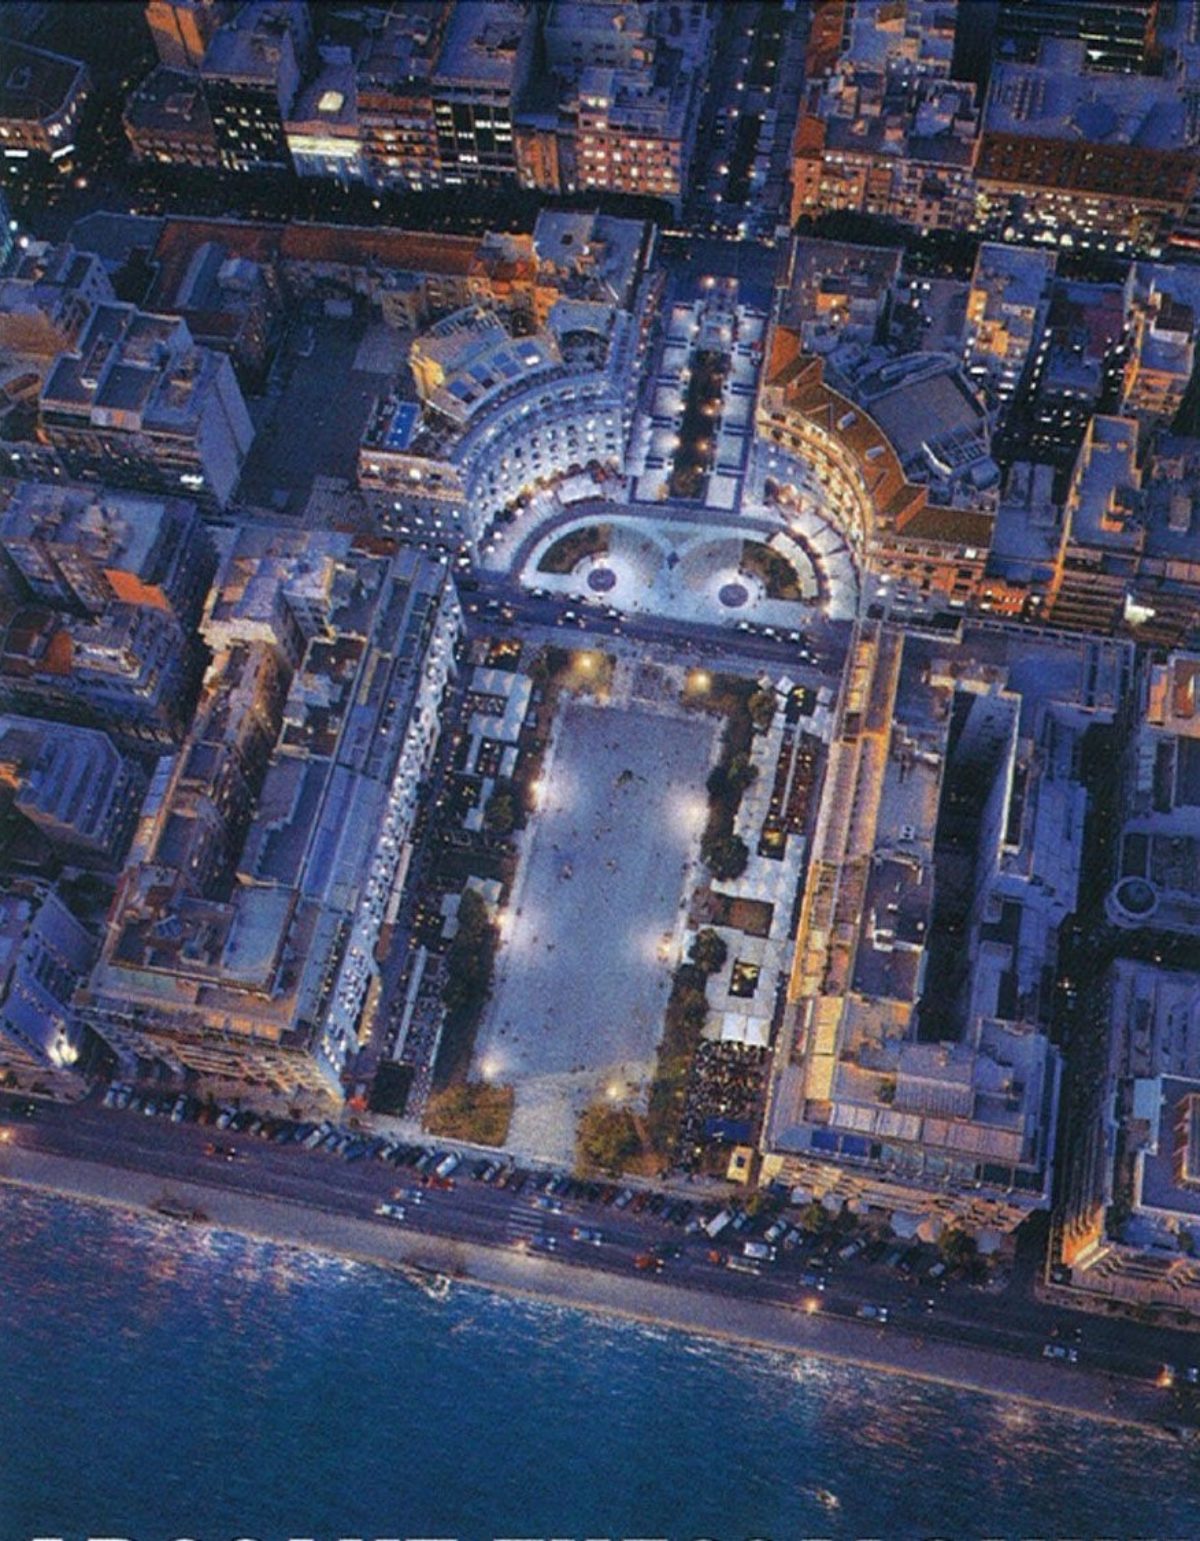 Προκήρυξη Ανοικτού Αρχιτεκτονικού Διαγωνισμού Προσχεδίων ενός σταδίου, του Δήμου Θεσσαλονίκης, με τίτλο: «Ανάπλαση της Πλατείας και του άξονα της Αριστοτέλους»